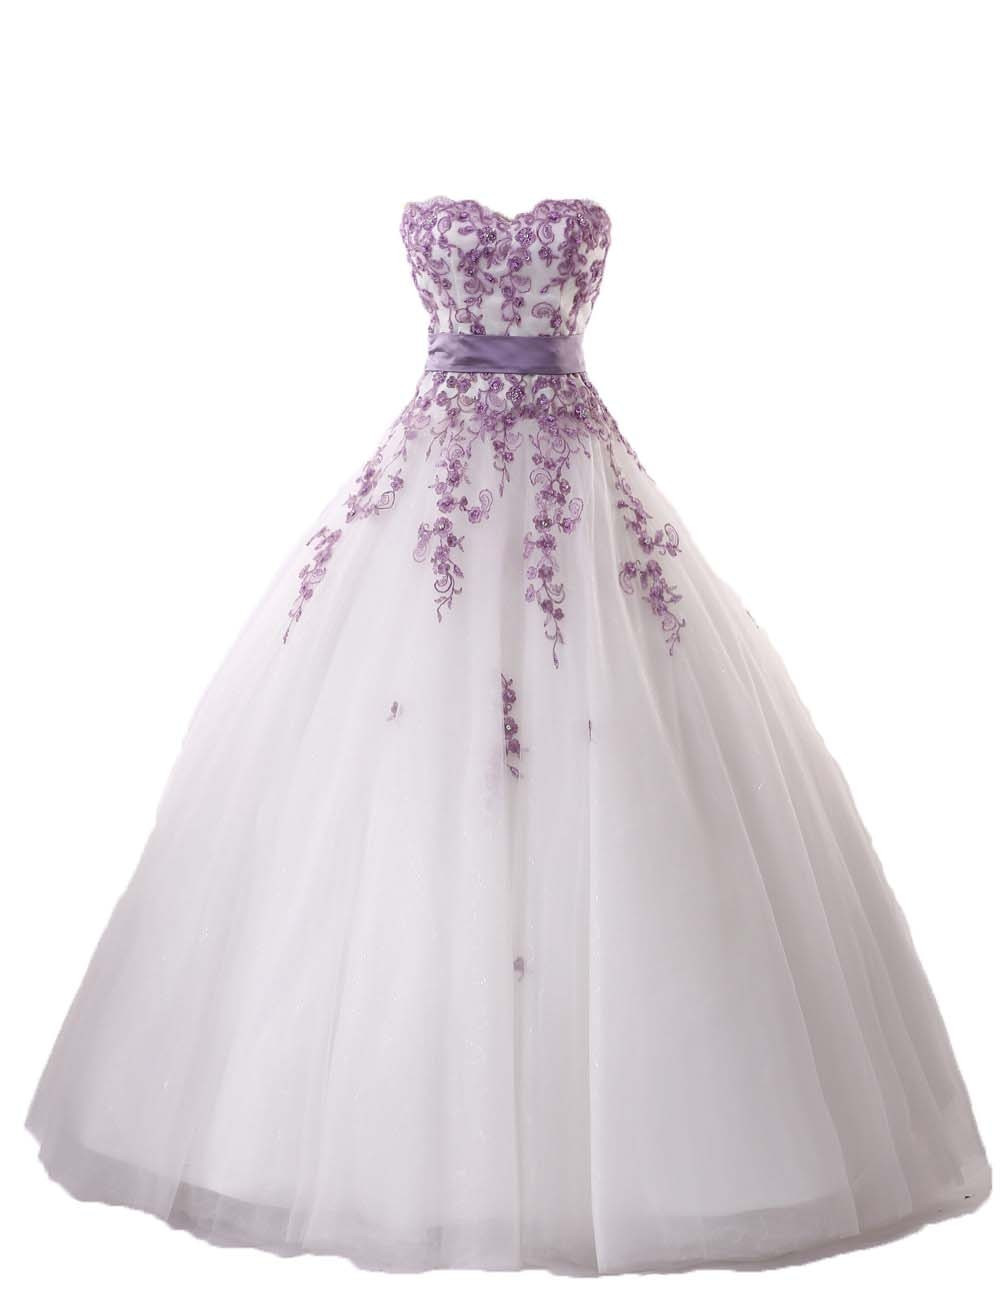 Lilac Wedding Dress
 Aliexpress Buy New Elegant Lilac Lace Wedding Dress